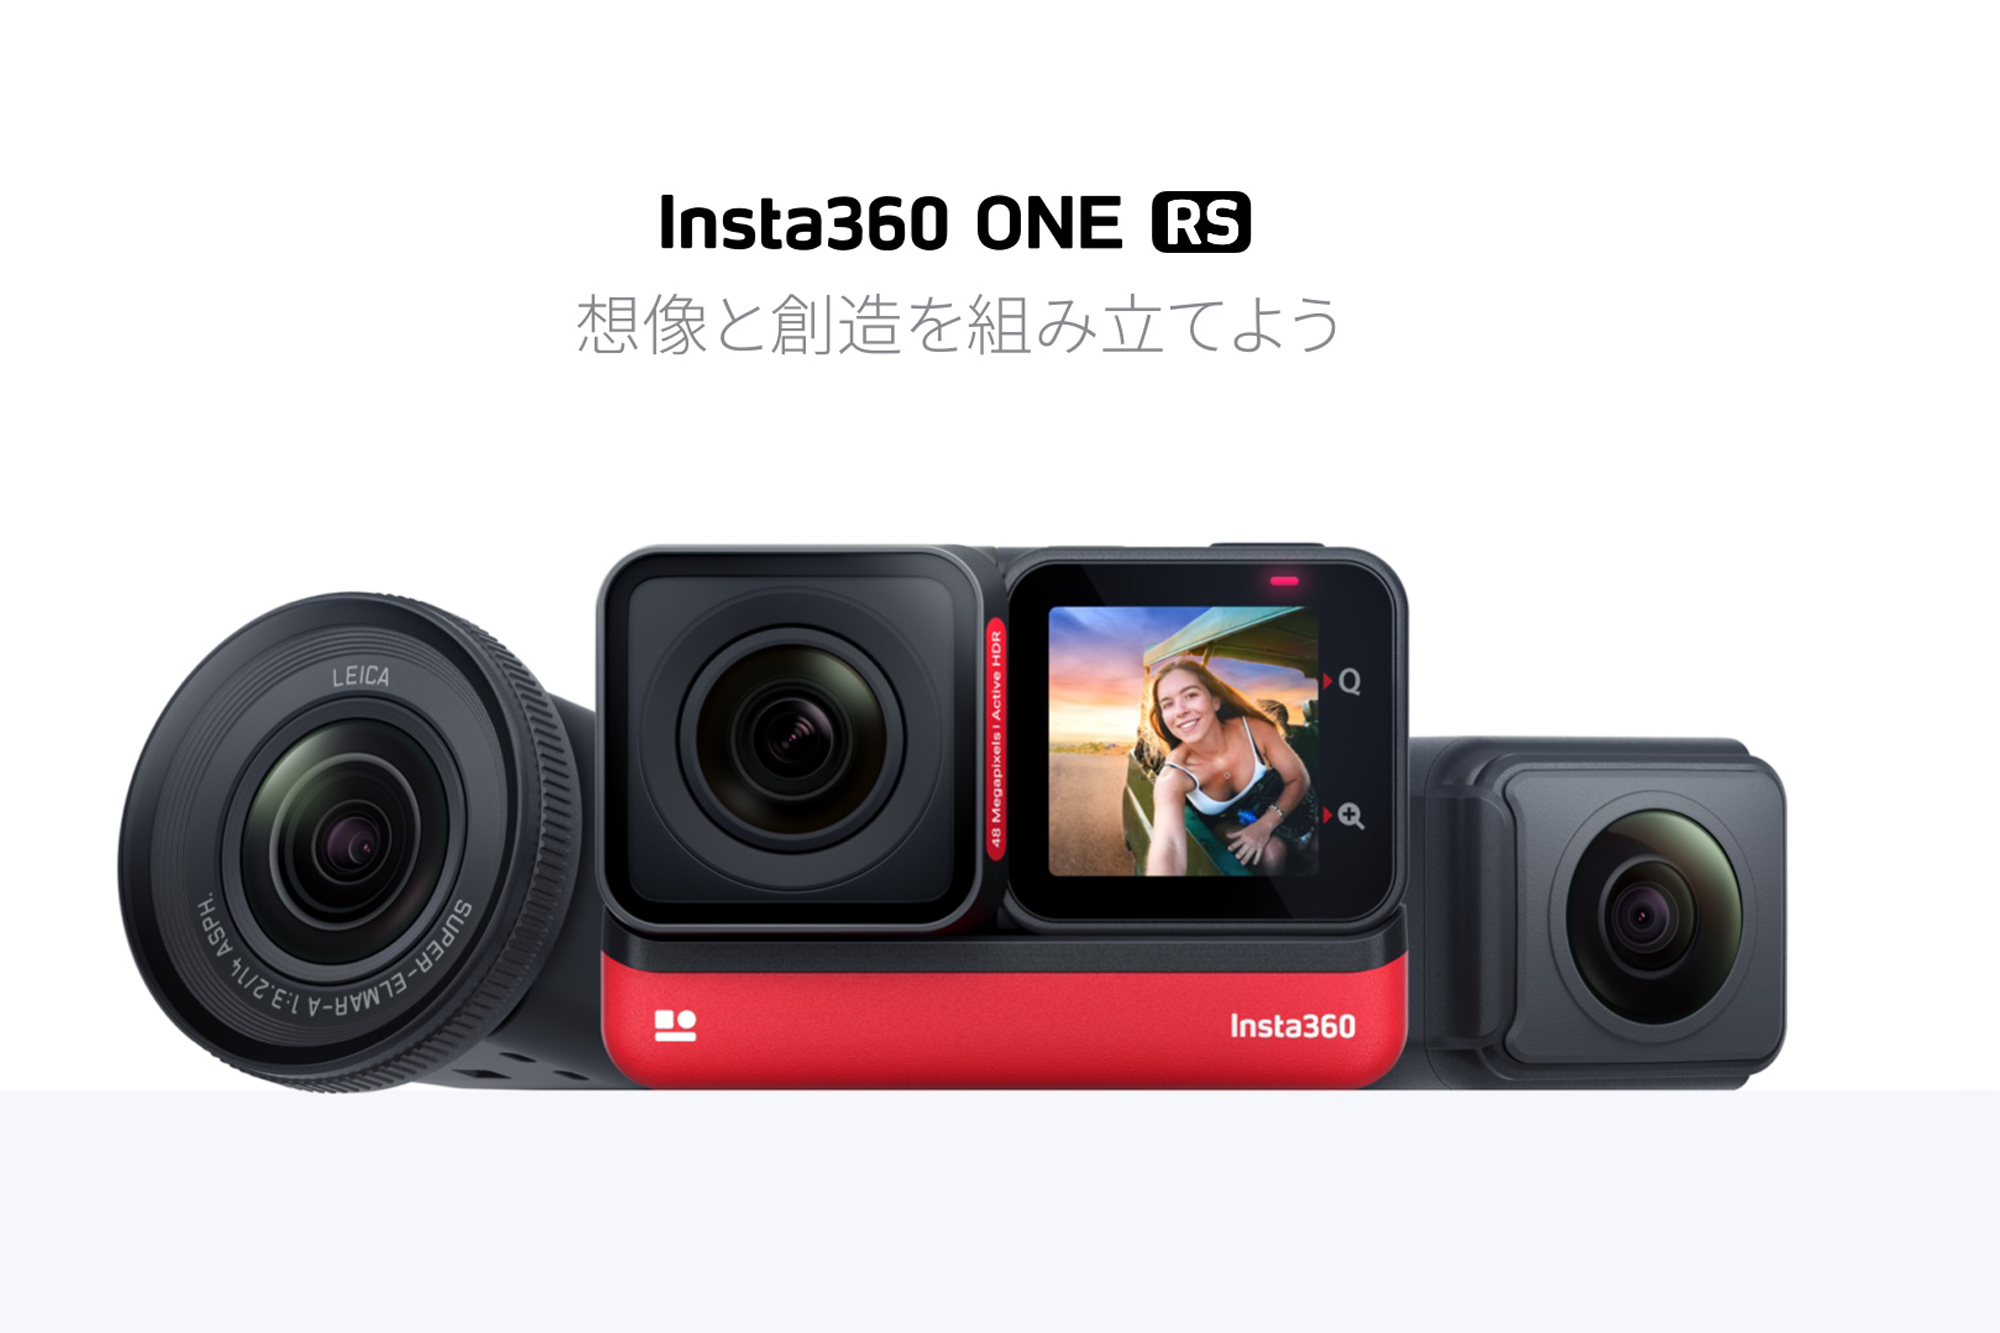 Insta360、レンズ交換式アクションカメラInsta360 ONE RSを発売。4,800